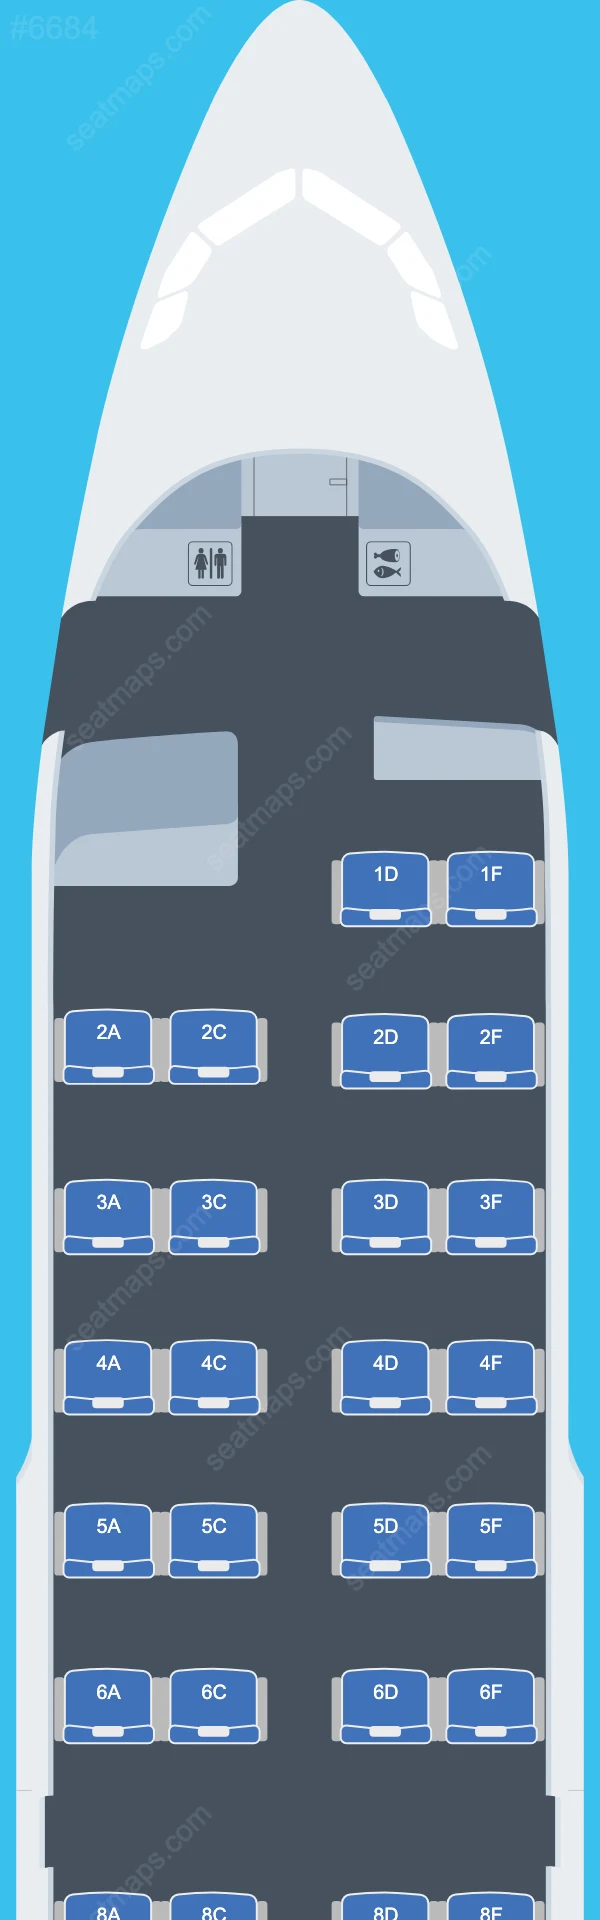 Air Canada Airbus A319 Seat Maps A319-100 V.2